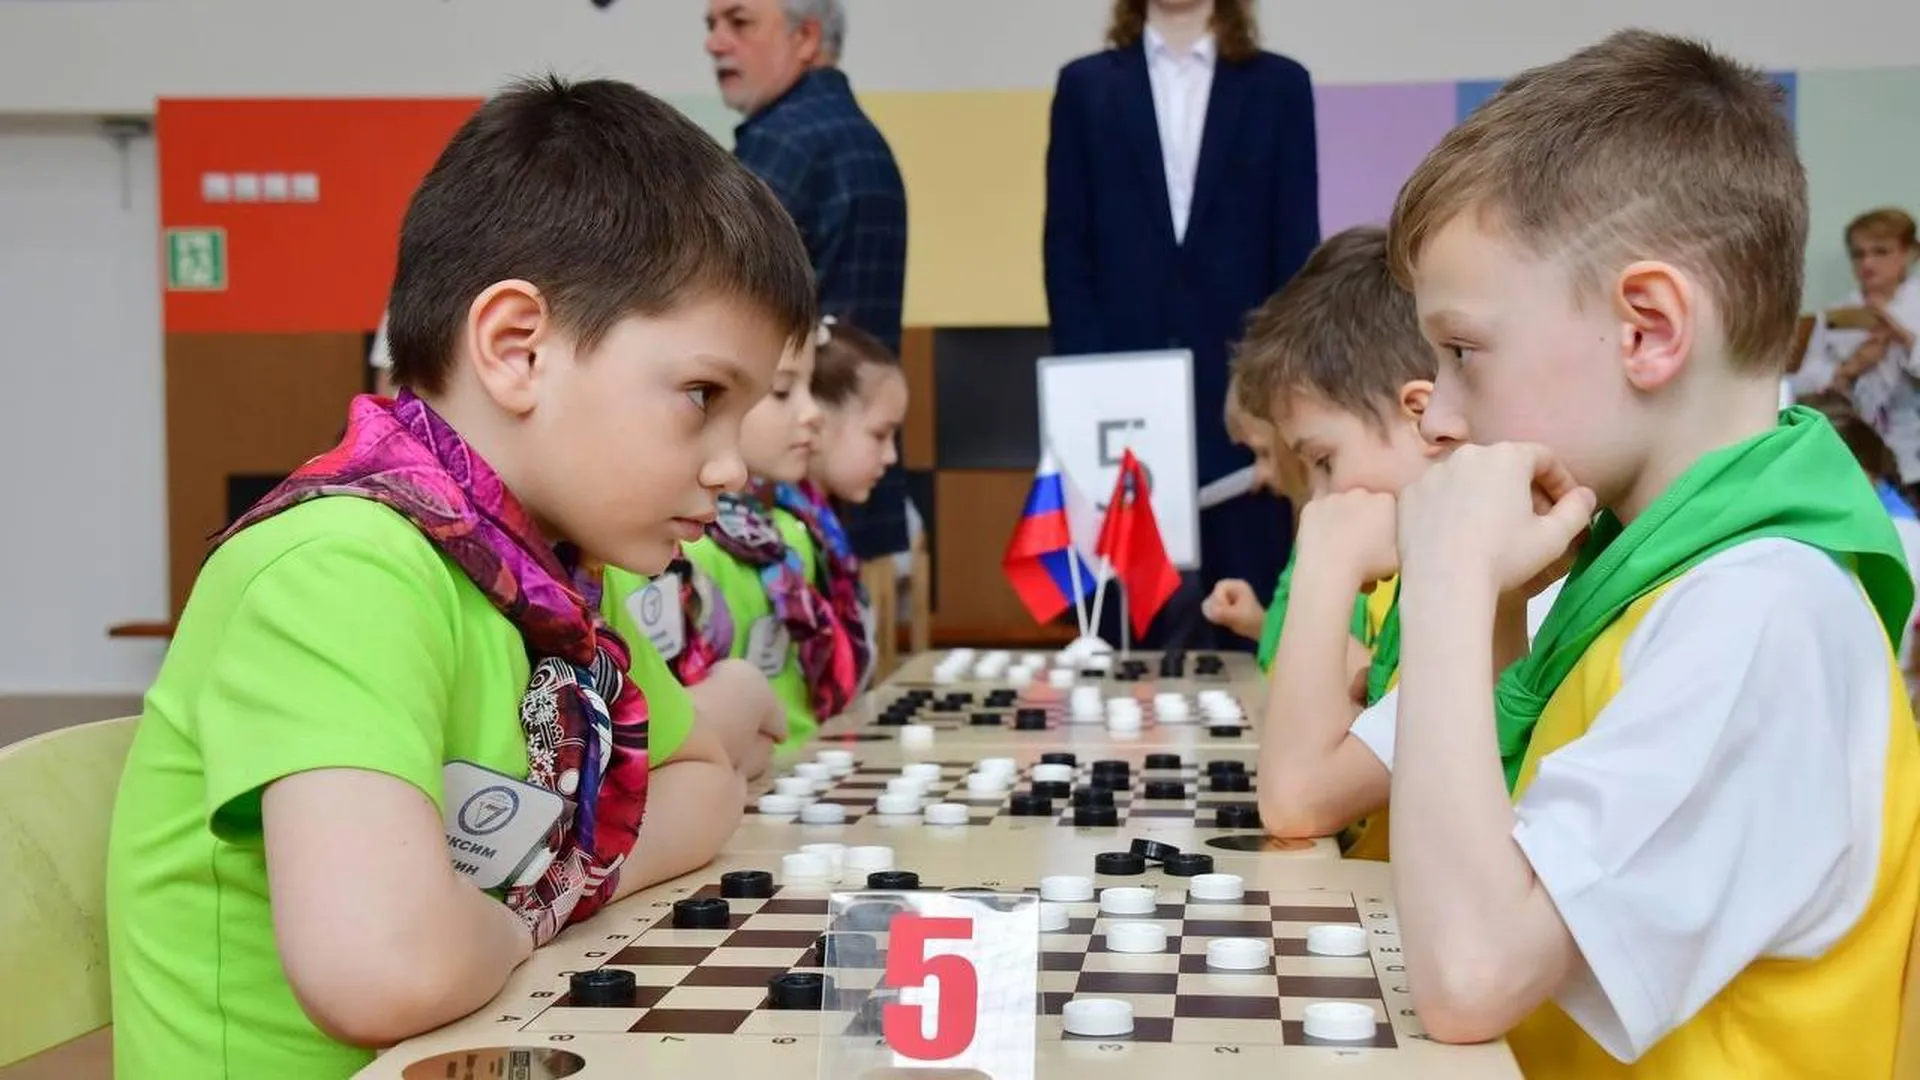 Финал соревнований для дошкольников по шашкам состоялся в Подмосковье